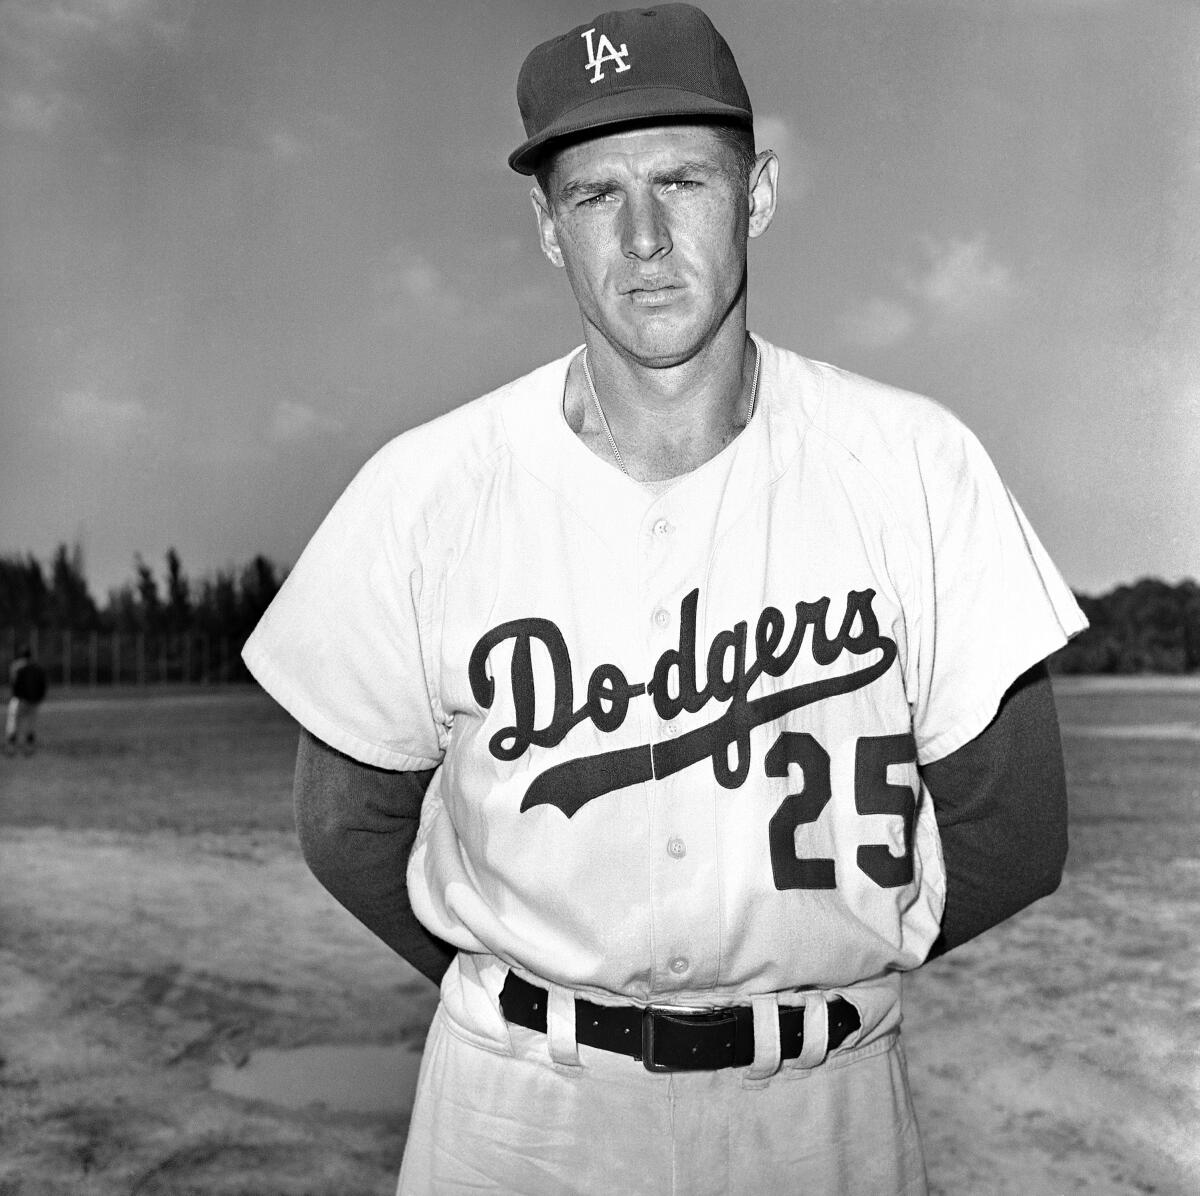 Dodgers outfielder Frank Howard in 1962. 